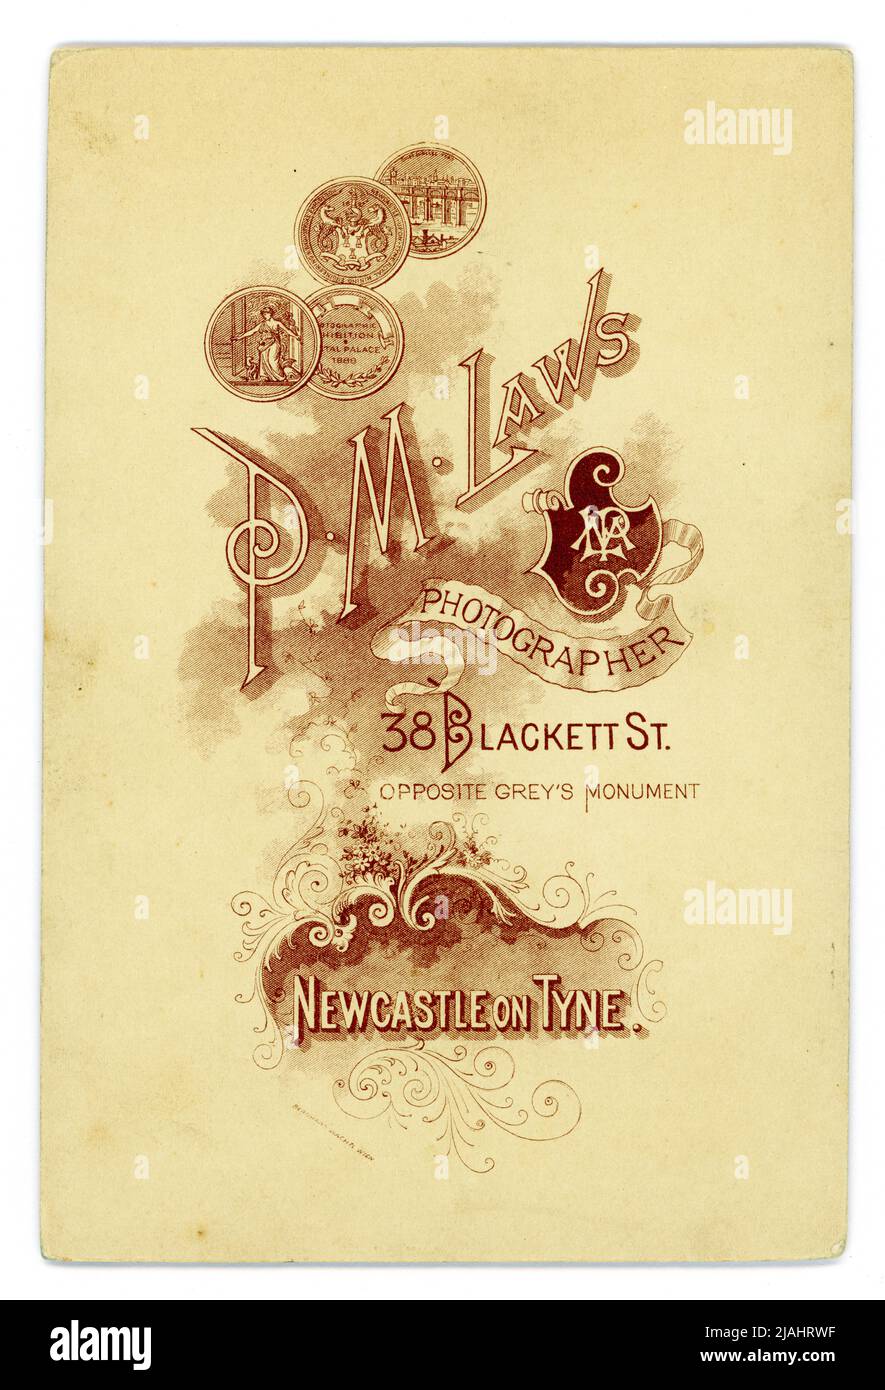 Carte originale du cabinet du studio de P.M. Laws, montrant divers prix remportés pour la photographie située au 38 Blackett St. Newcastle-upon-Tyne, Angleterre, Royaume-Uni fin 1880, début 1890. Banque D'Images